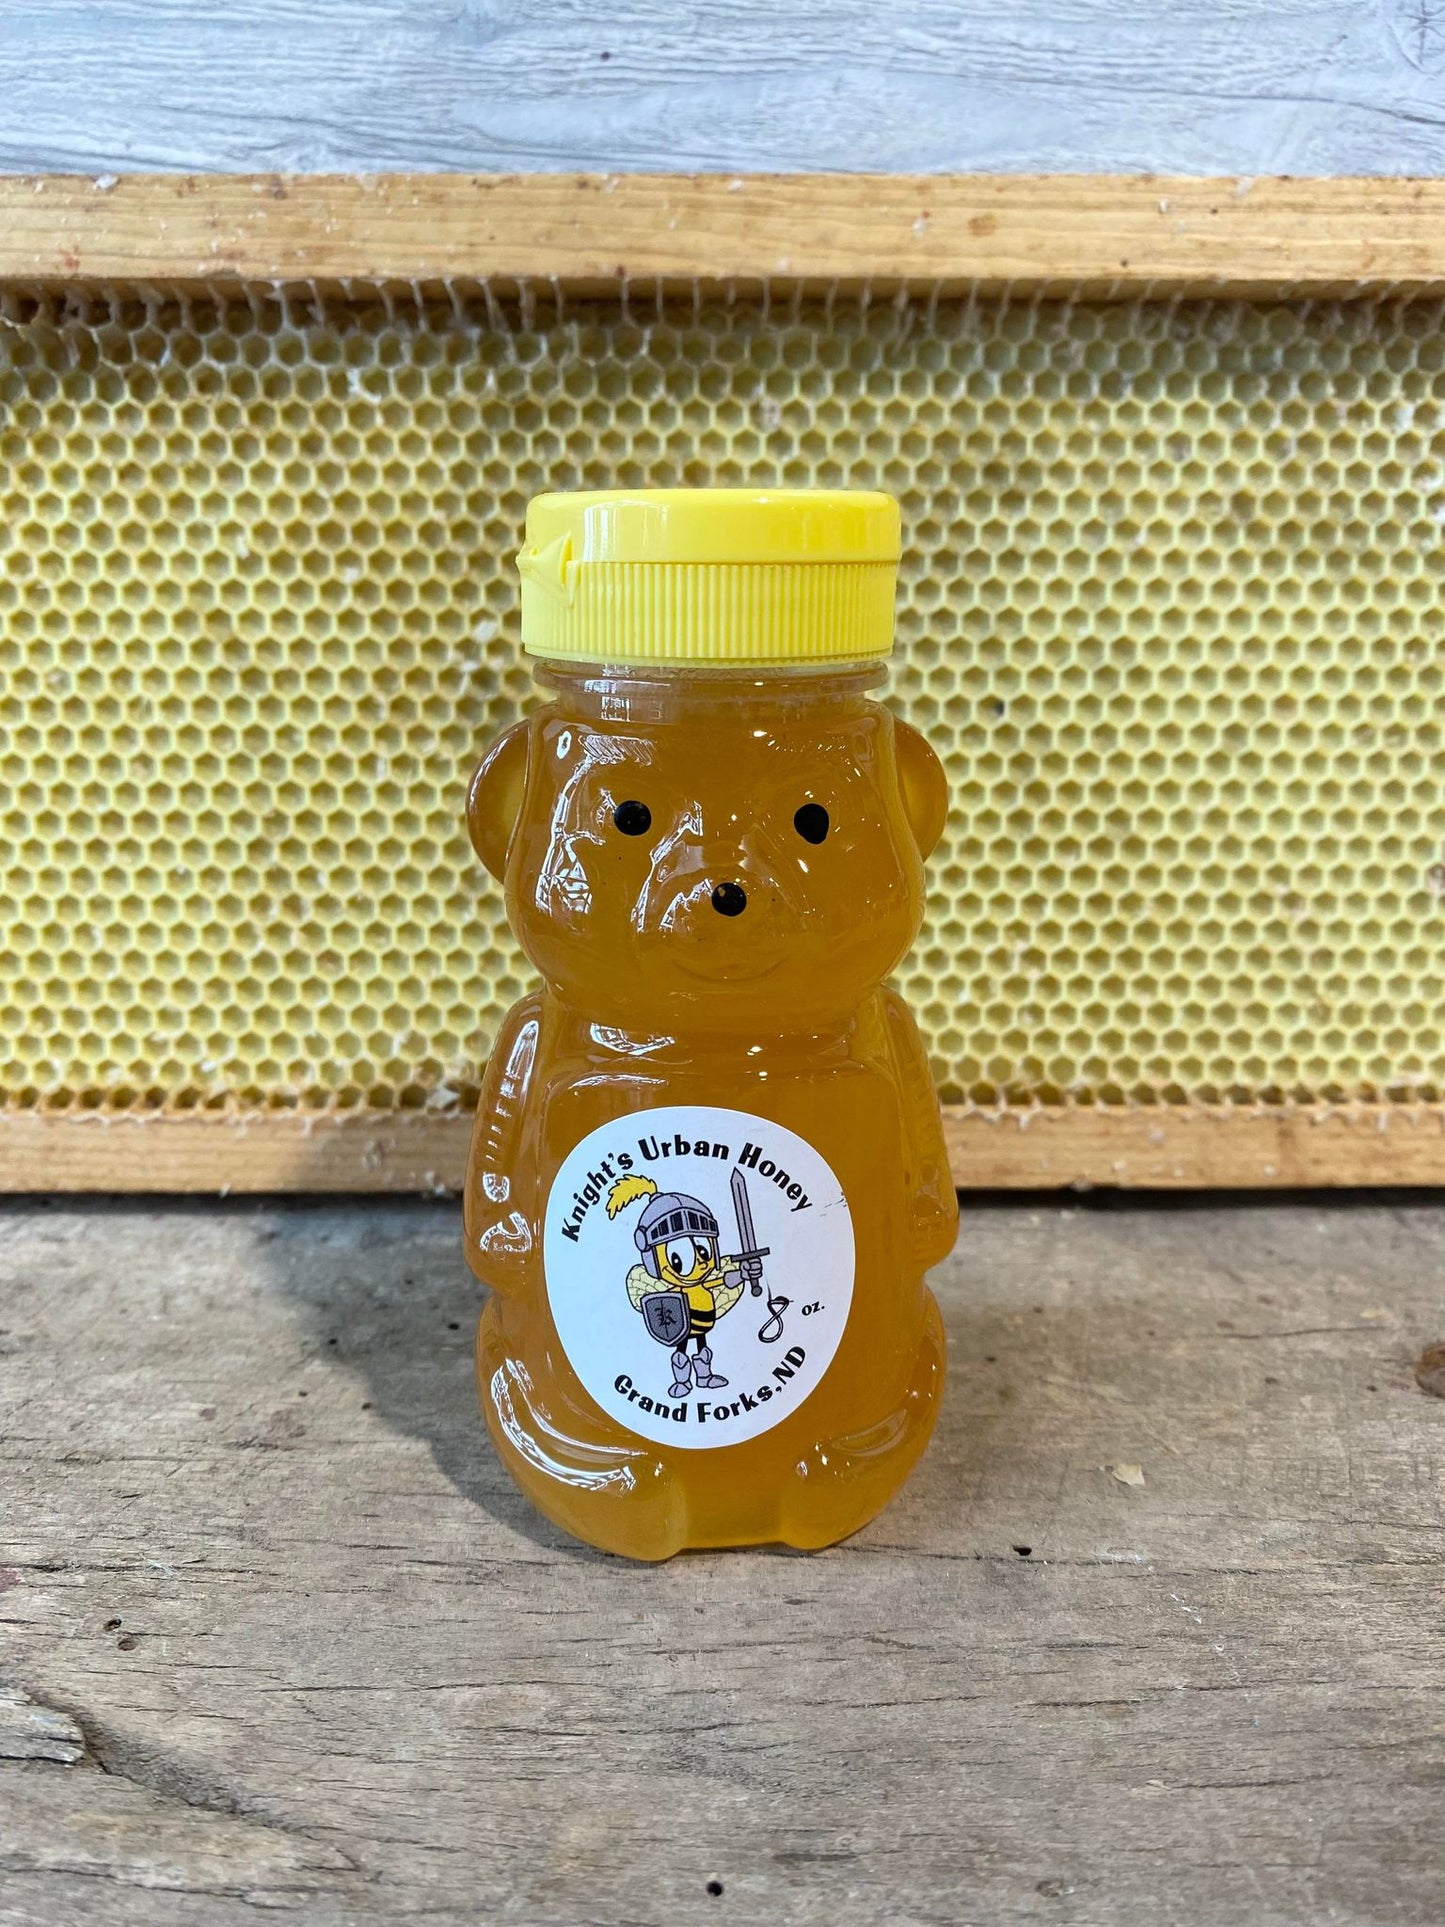 Knight's Honey Farm